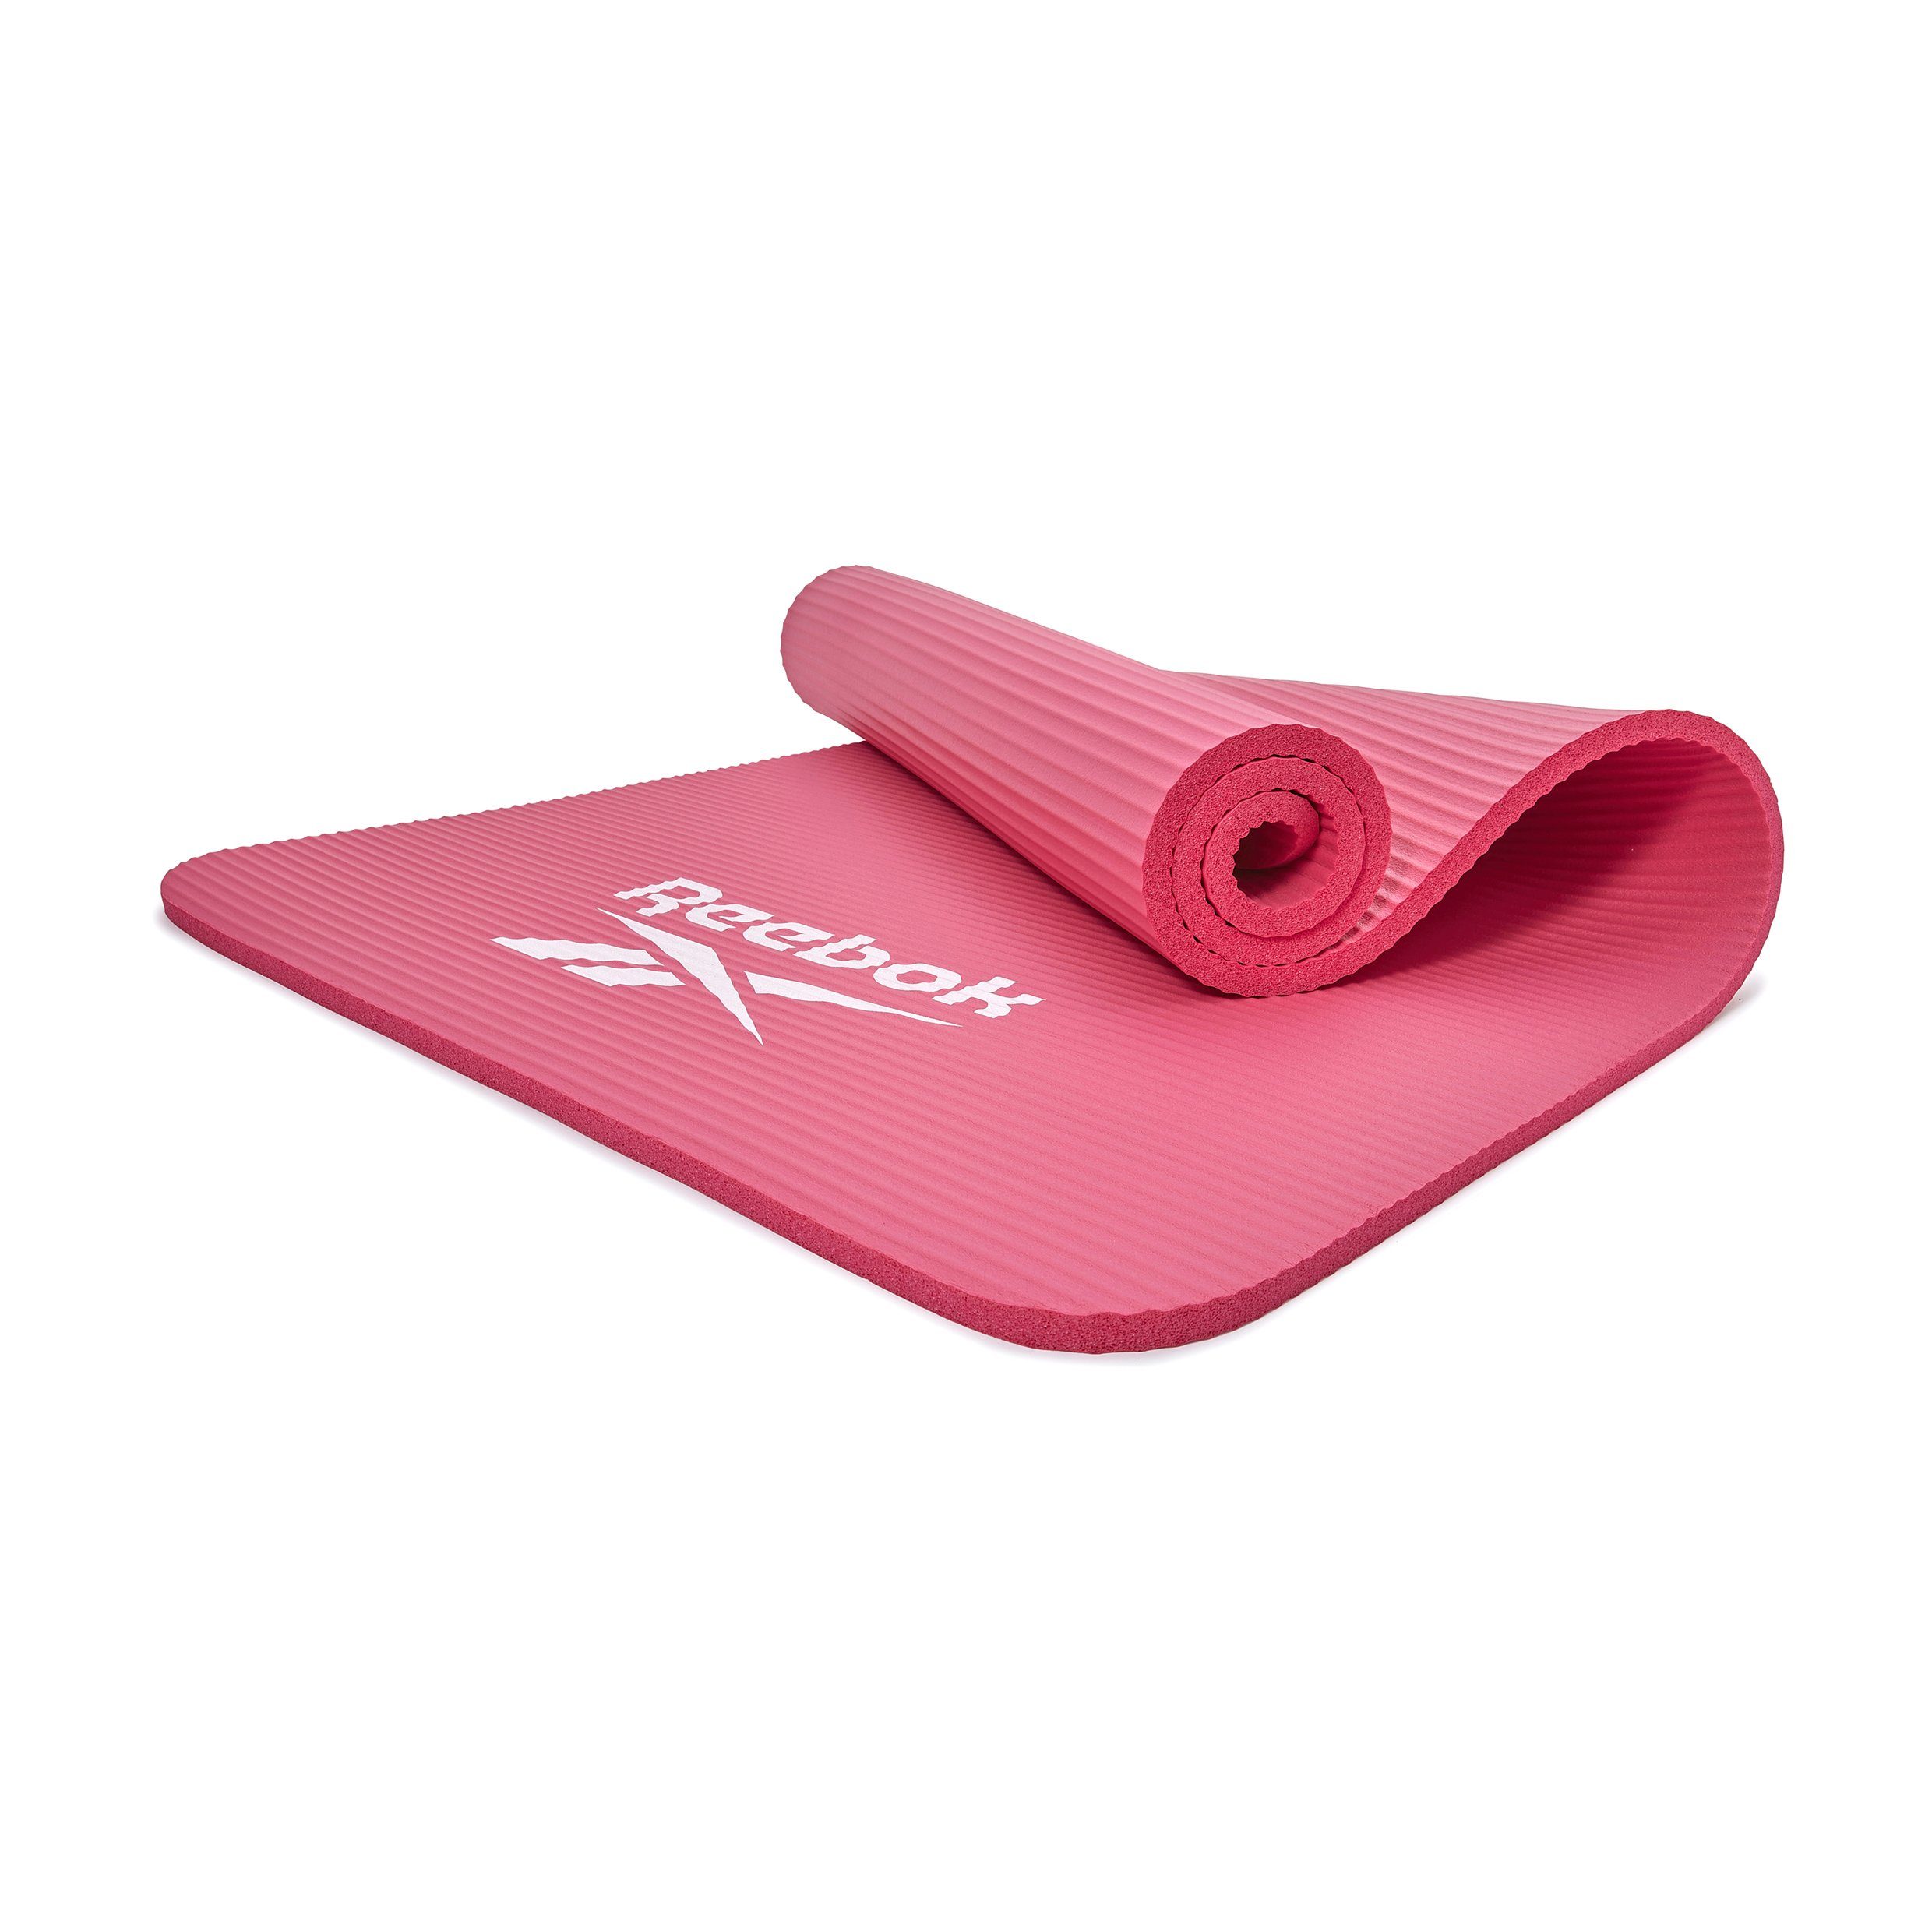 Reebok Fitnessmatte Reebok Fitness-/Trainingsmatte, 15mm, Rutschfeste Oberfläche pink